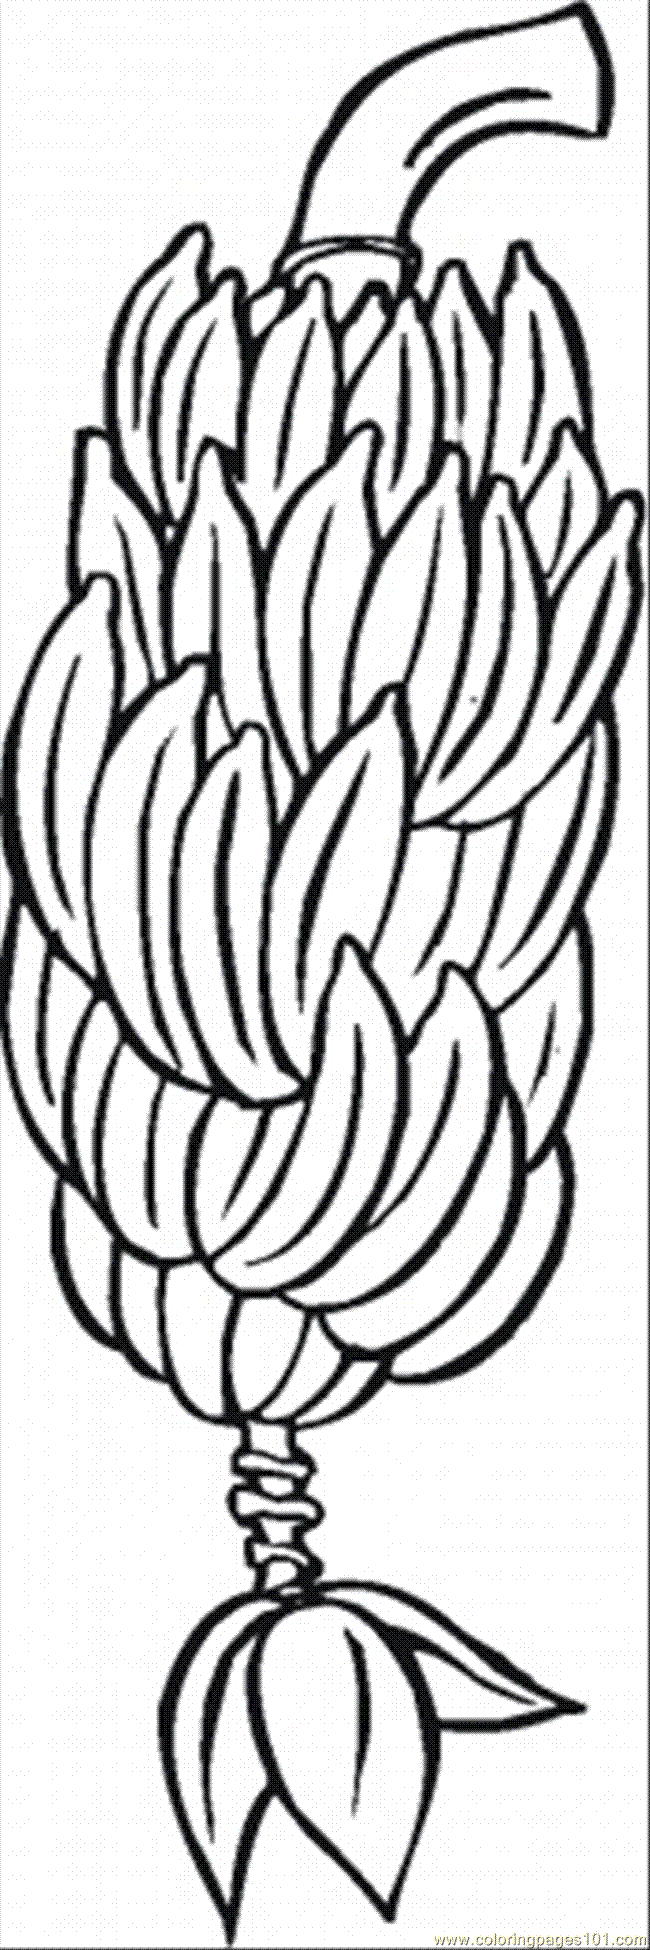 Clip Art Banana Tree - Cliparts.co